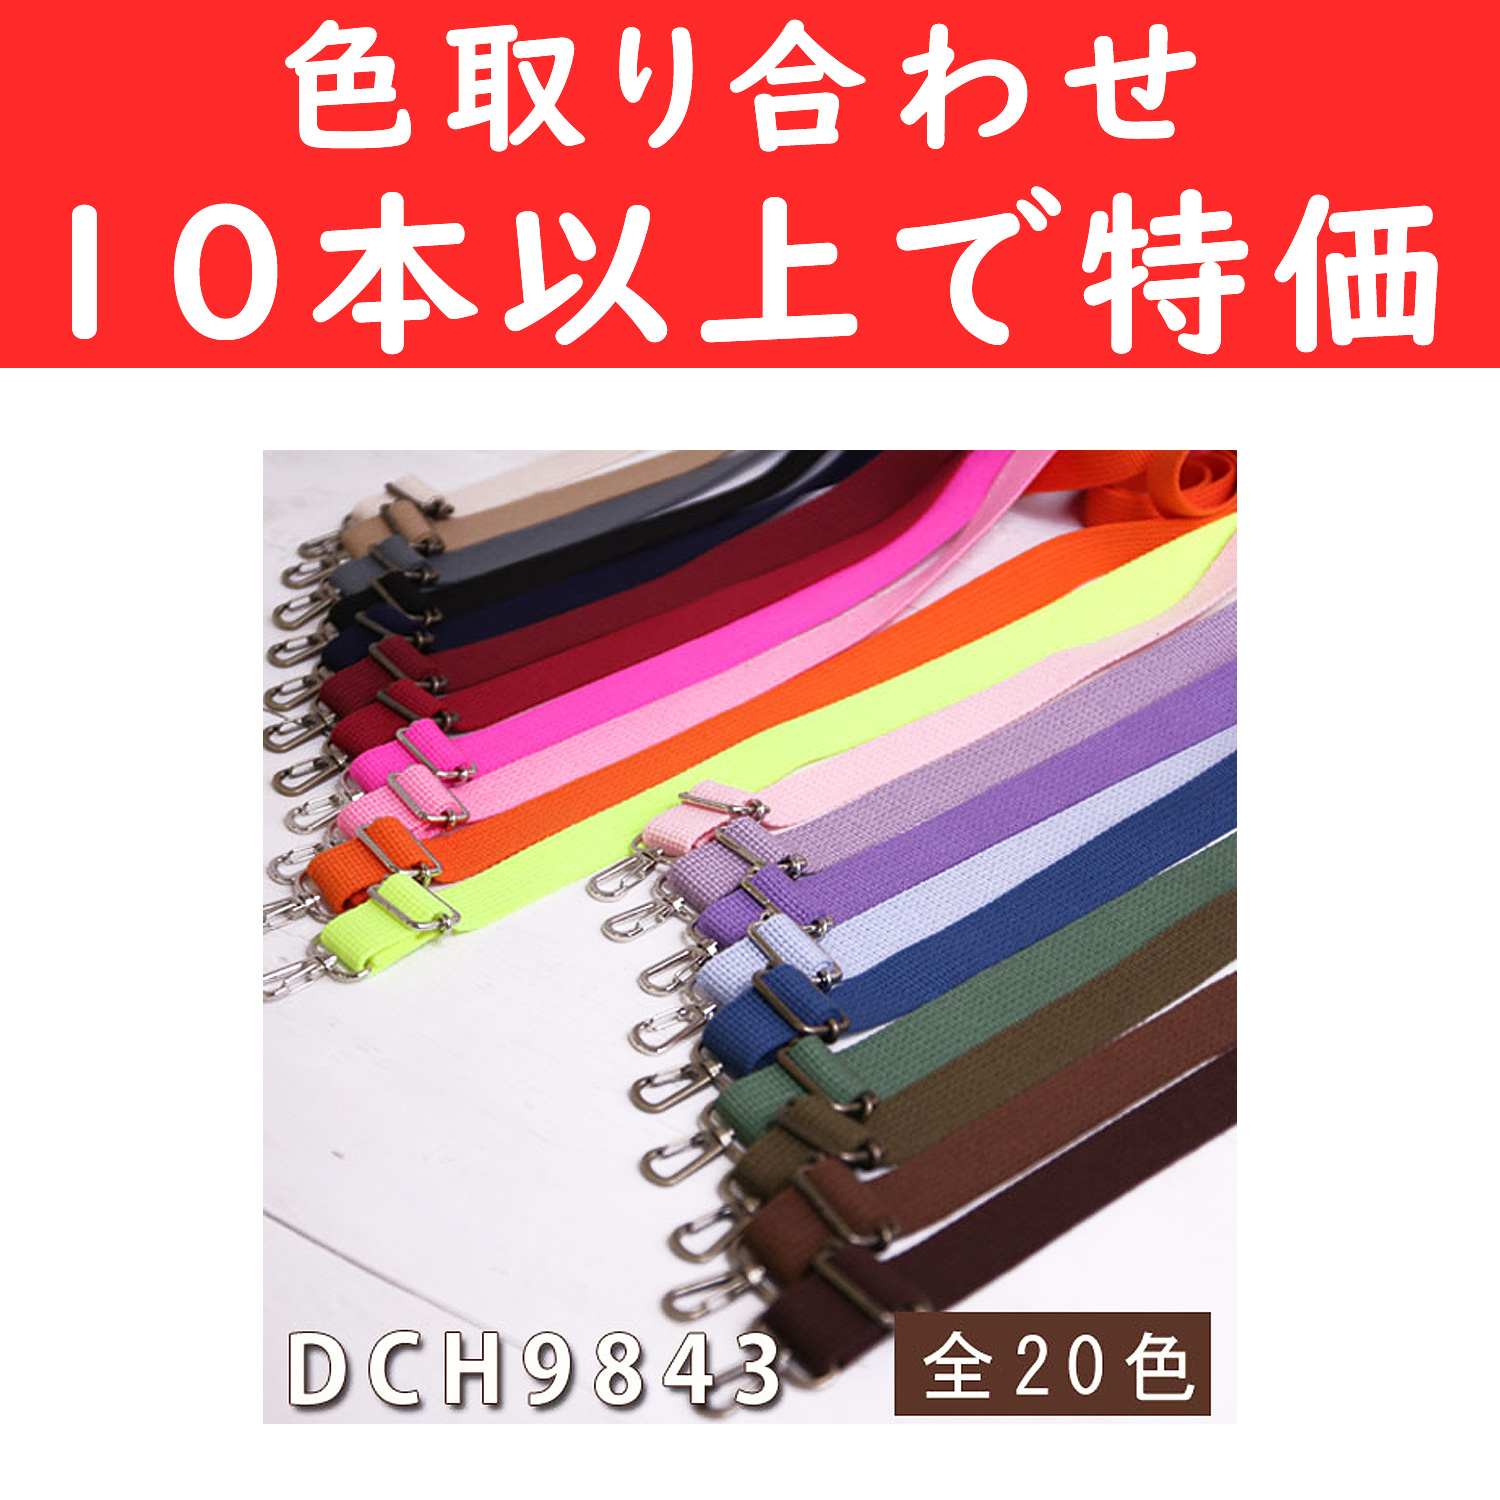 【第二弾】DCH9843-OVER10 アクリルショルダー 巾約2.5cm×70～140cm 色取り合わせて10本以上 (本)